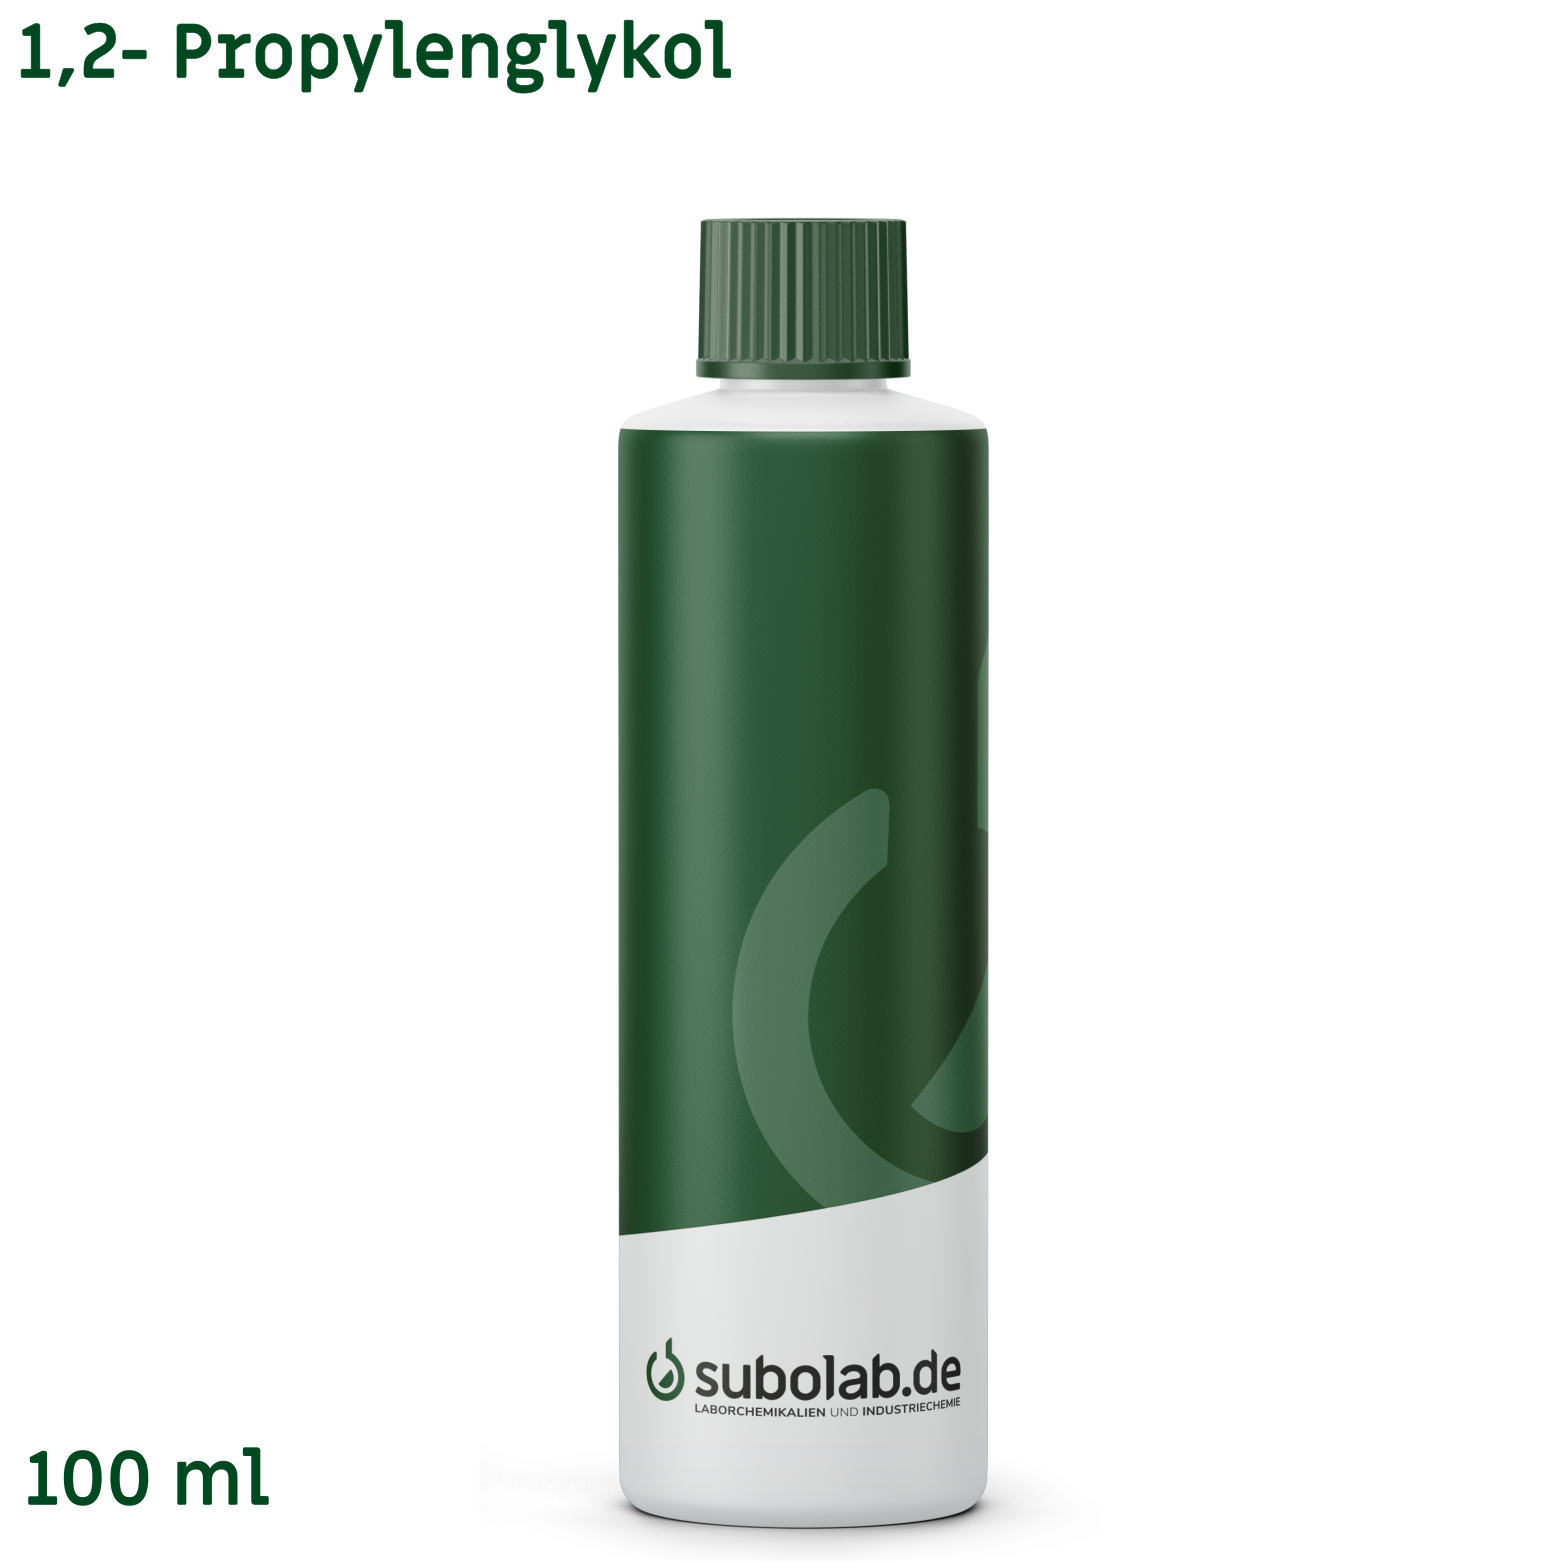 Bild von 1,2- Propylenglykol (100 ml)